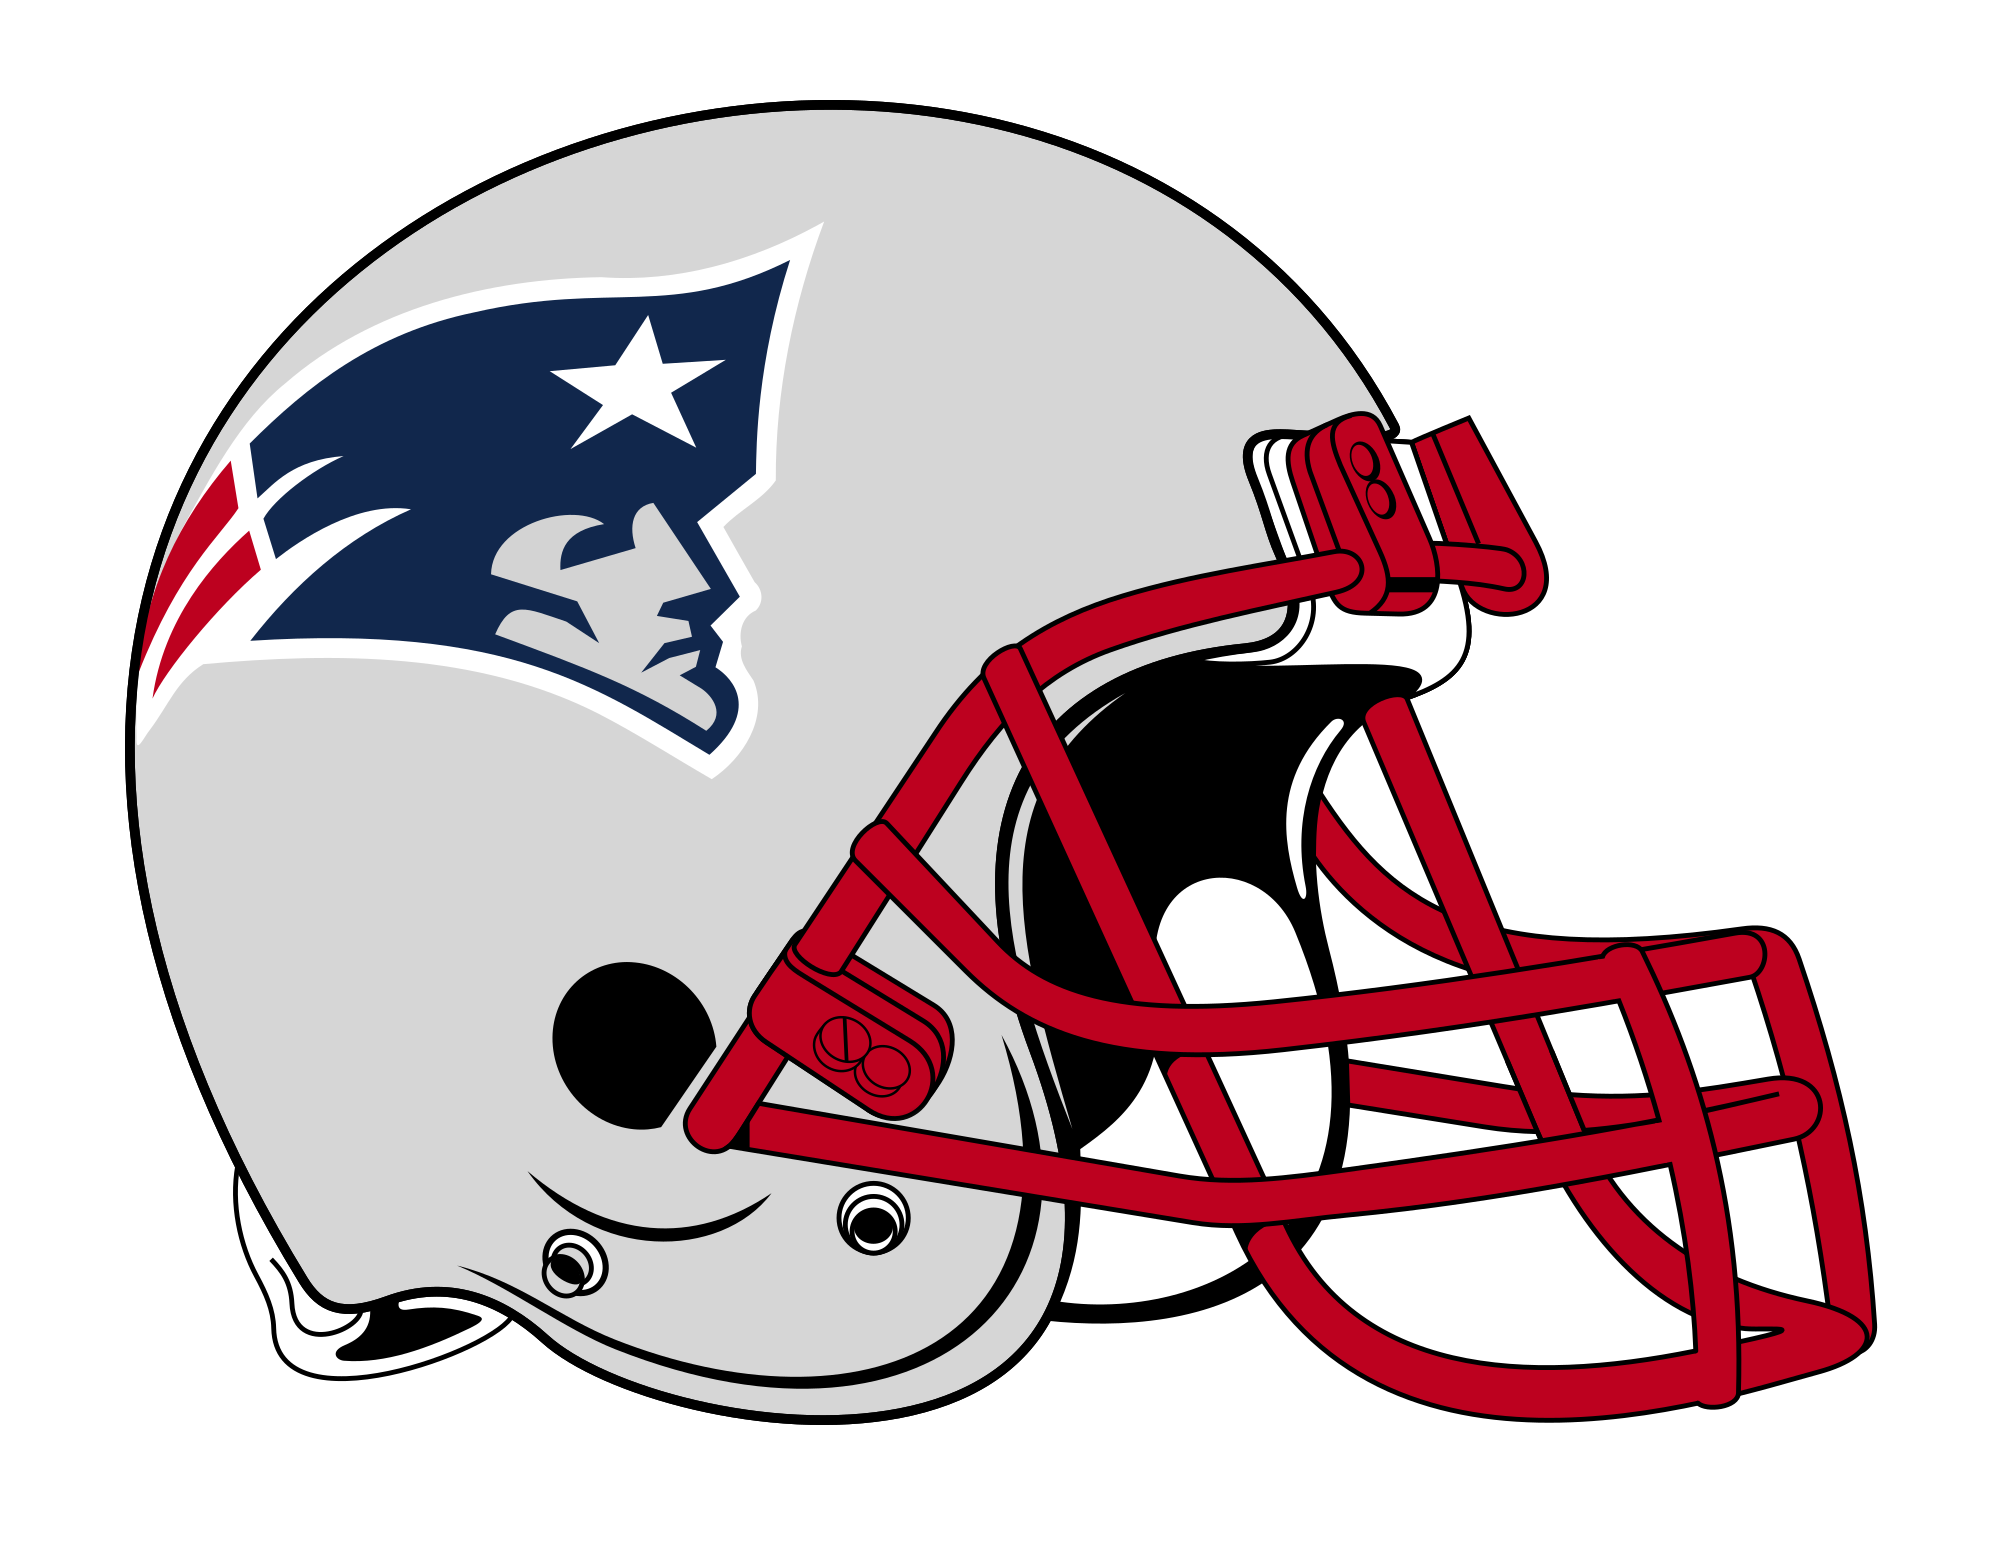 New England Patriots Logo Png Image Purepng Free Transparent Cc0